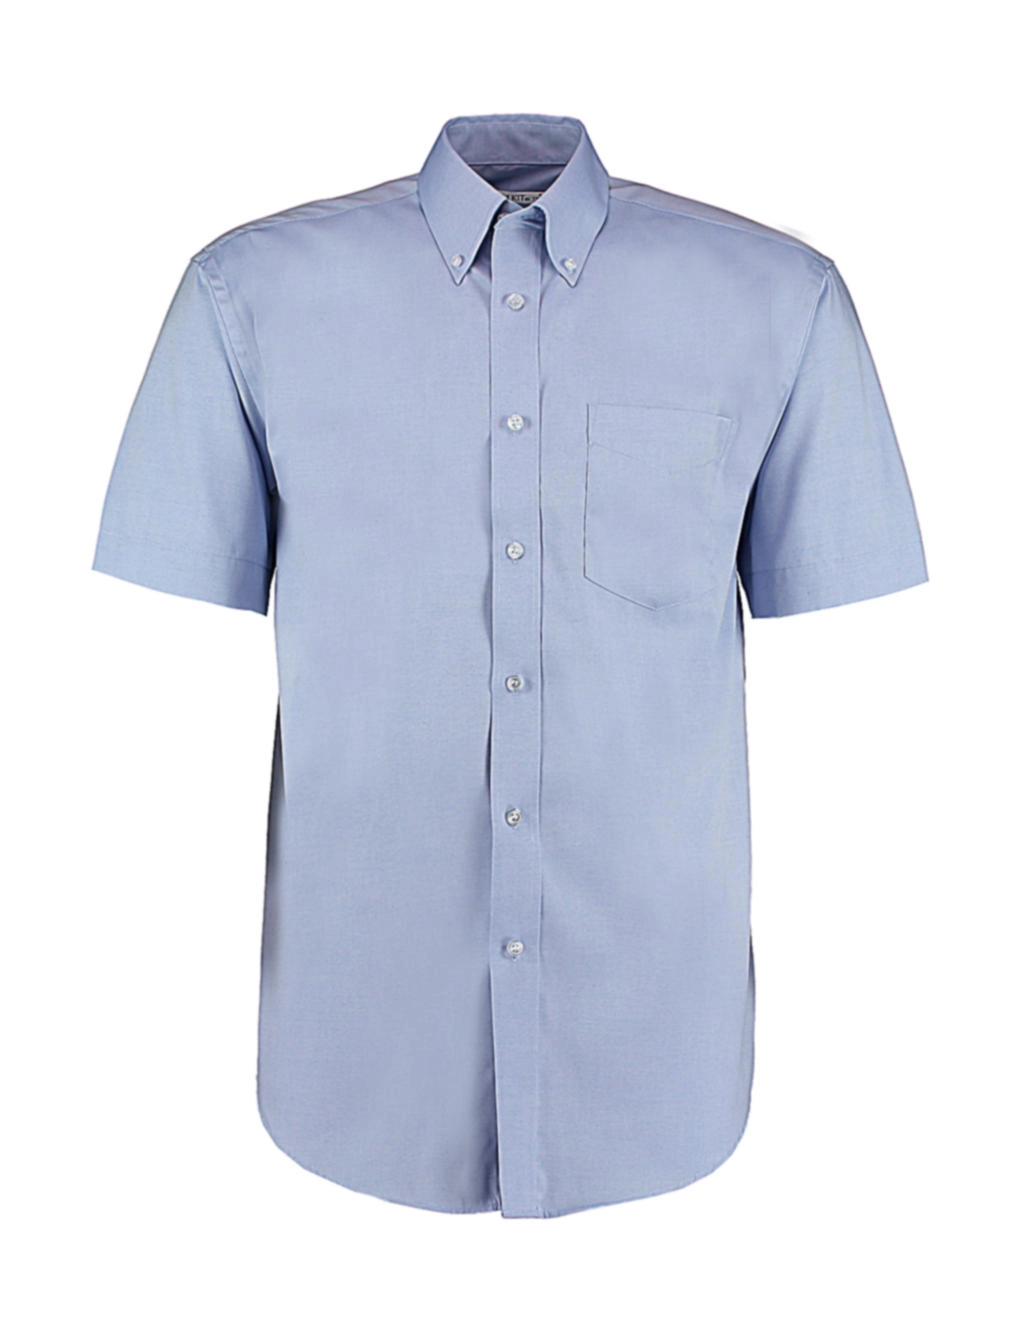 Classic Fit Premium Oxford Shirt SSL zum Besticken und Bedrucken in der Farbe Light Blue mit Ihren Logo, Schriftzug oder Motiv.